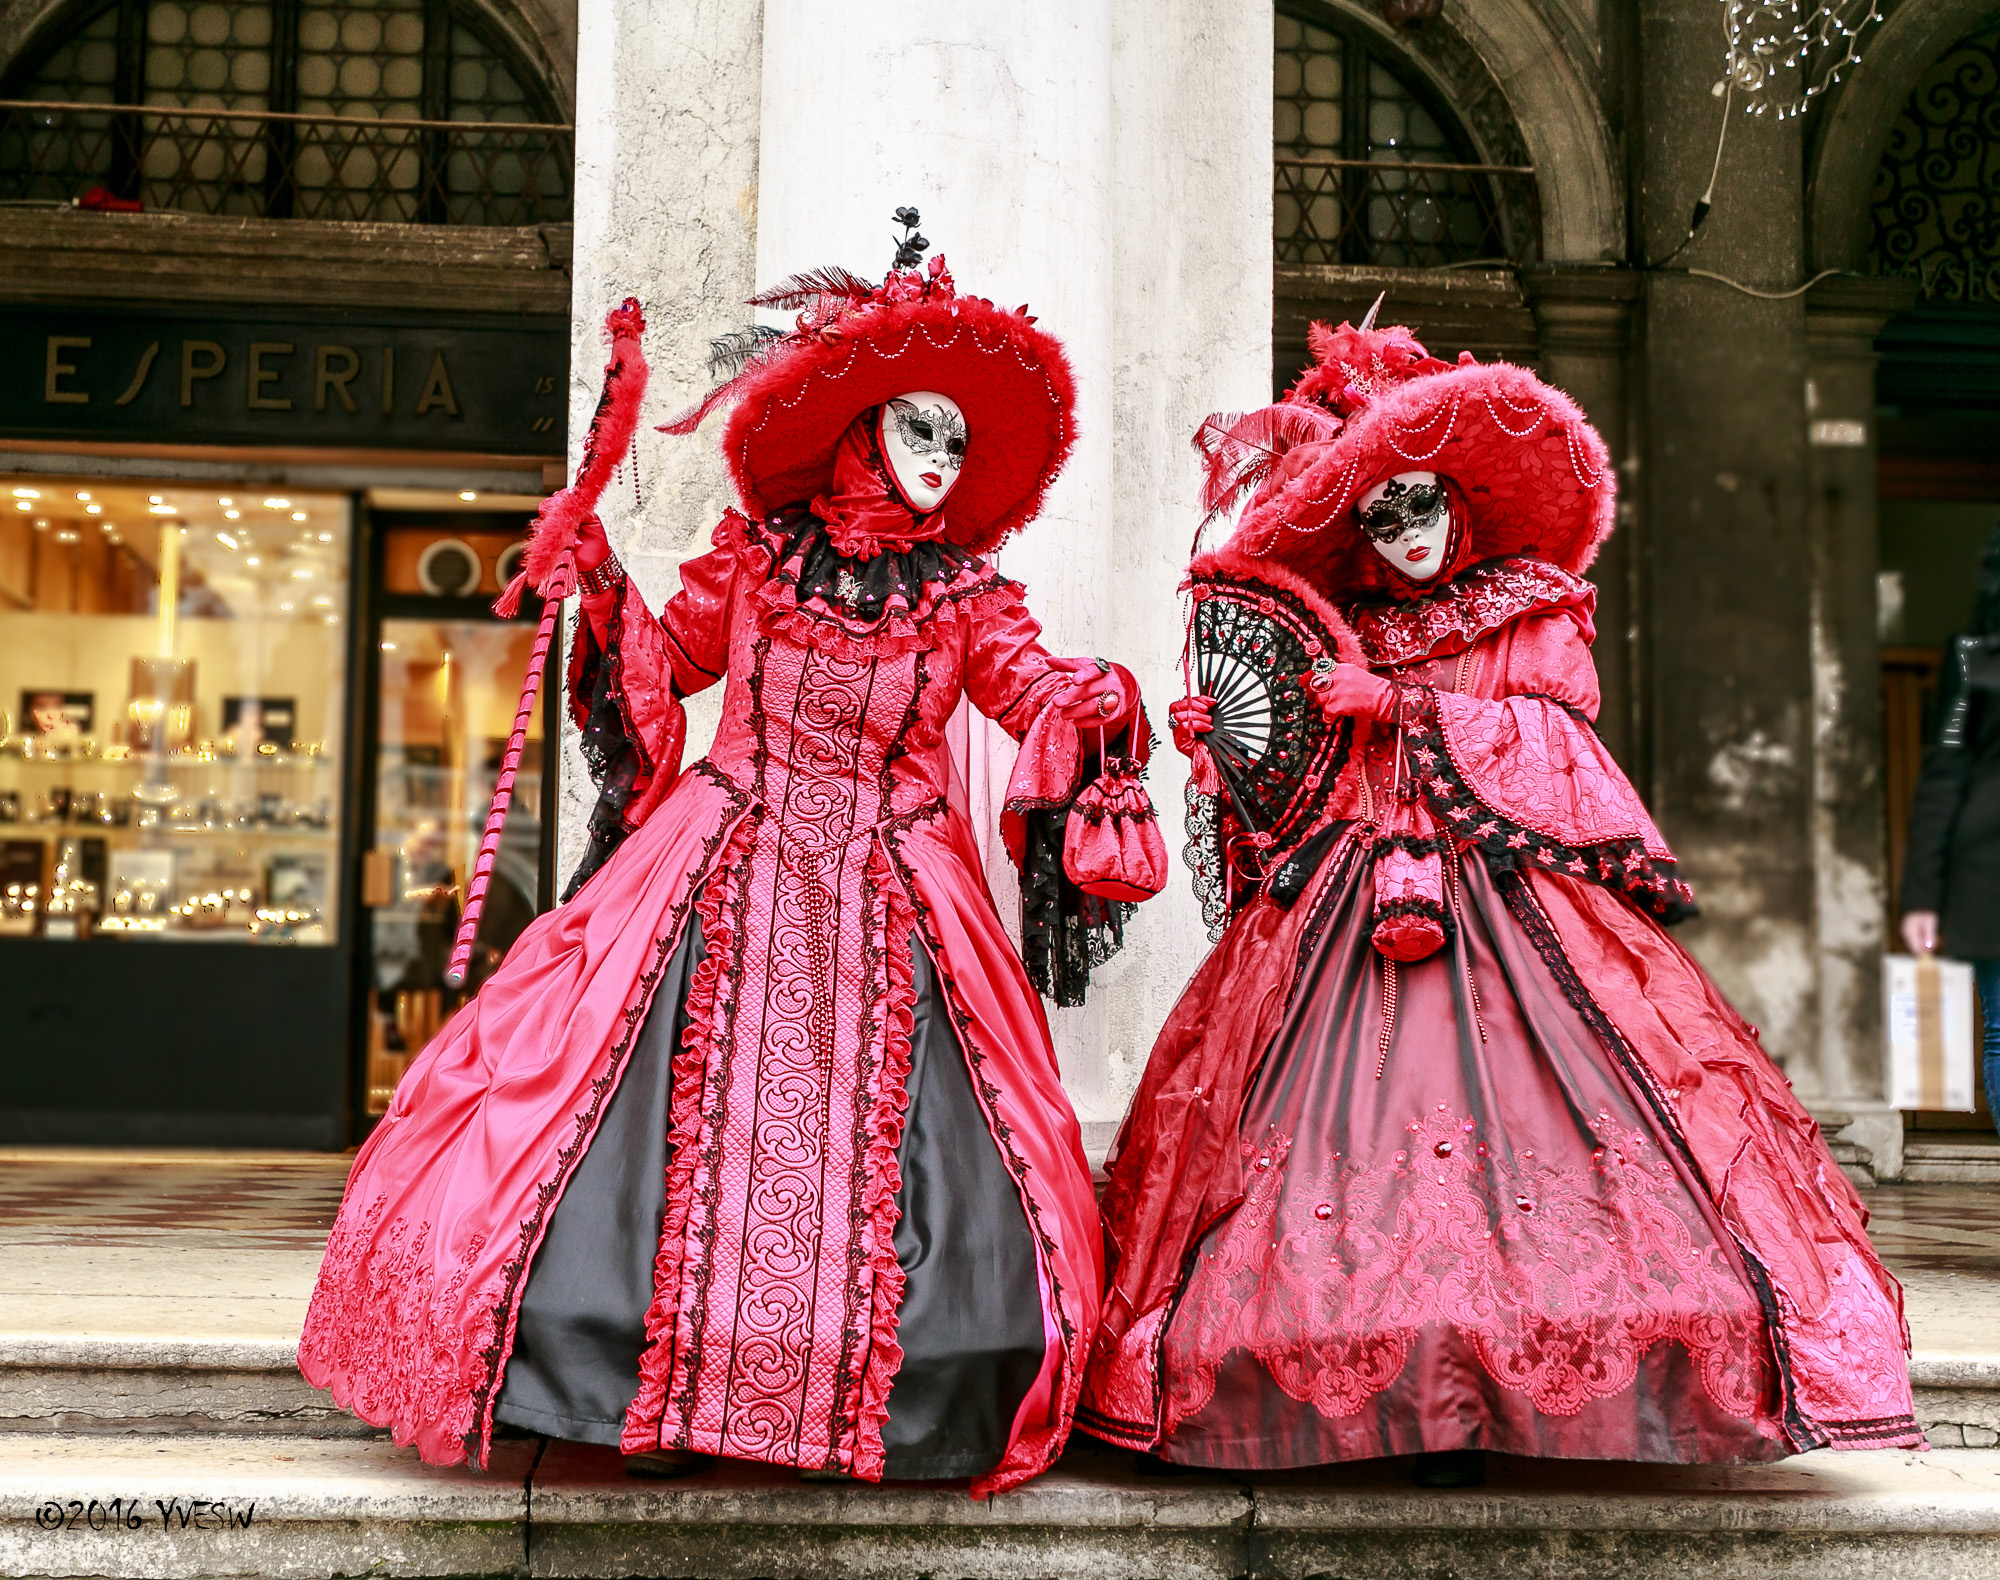 Одевали карнавал. Венецианский карнавал в Италии костюмы. Костюмированный карнавал в Венеции. Венецианский карнавал Жюль Демерссман. Маскарад Венеция костюмы.